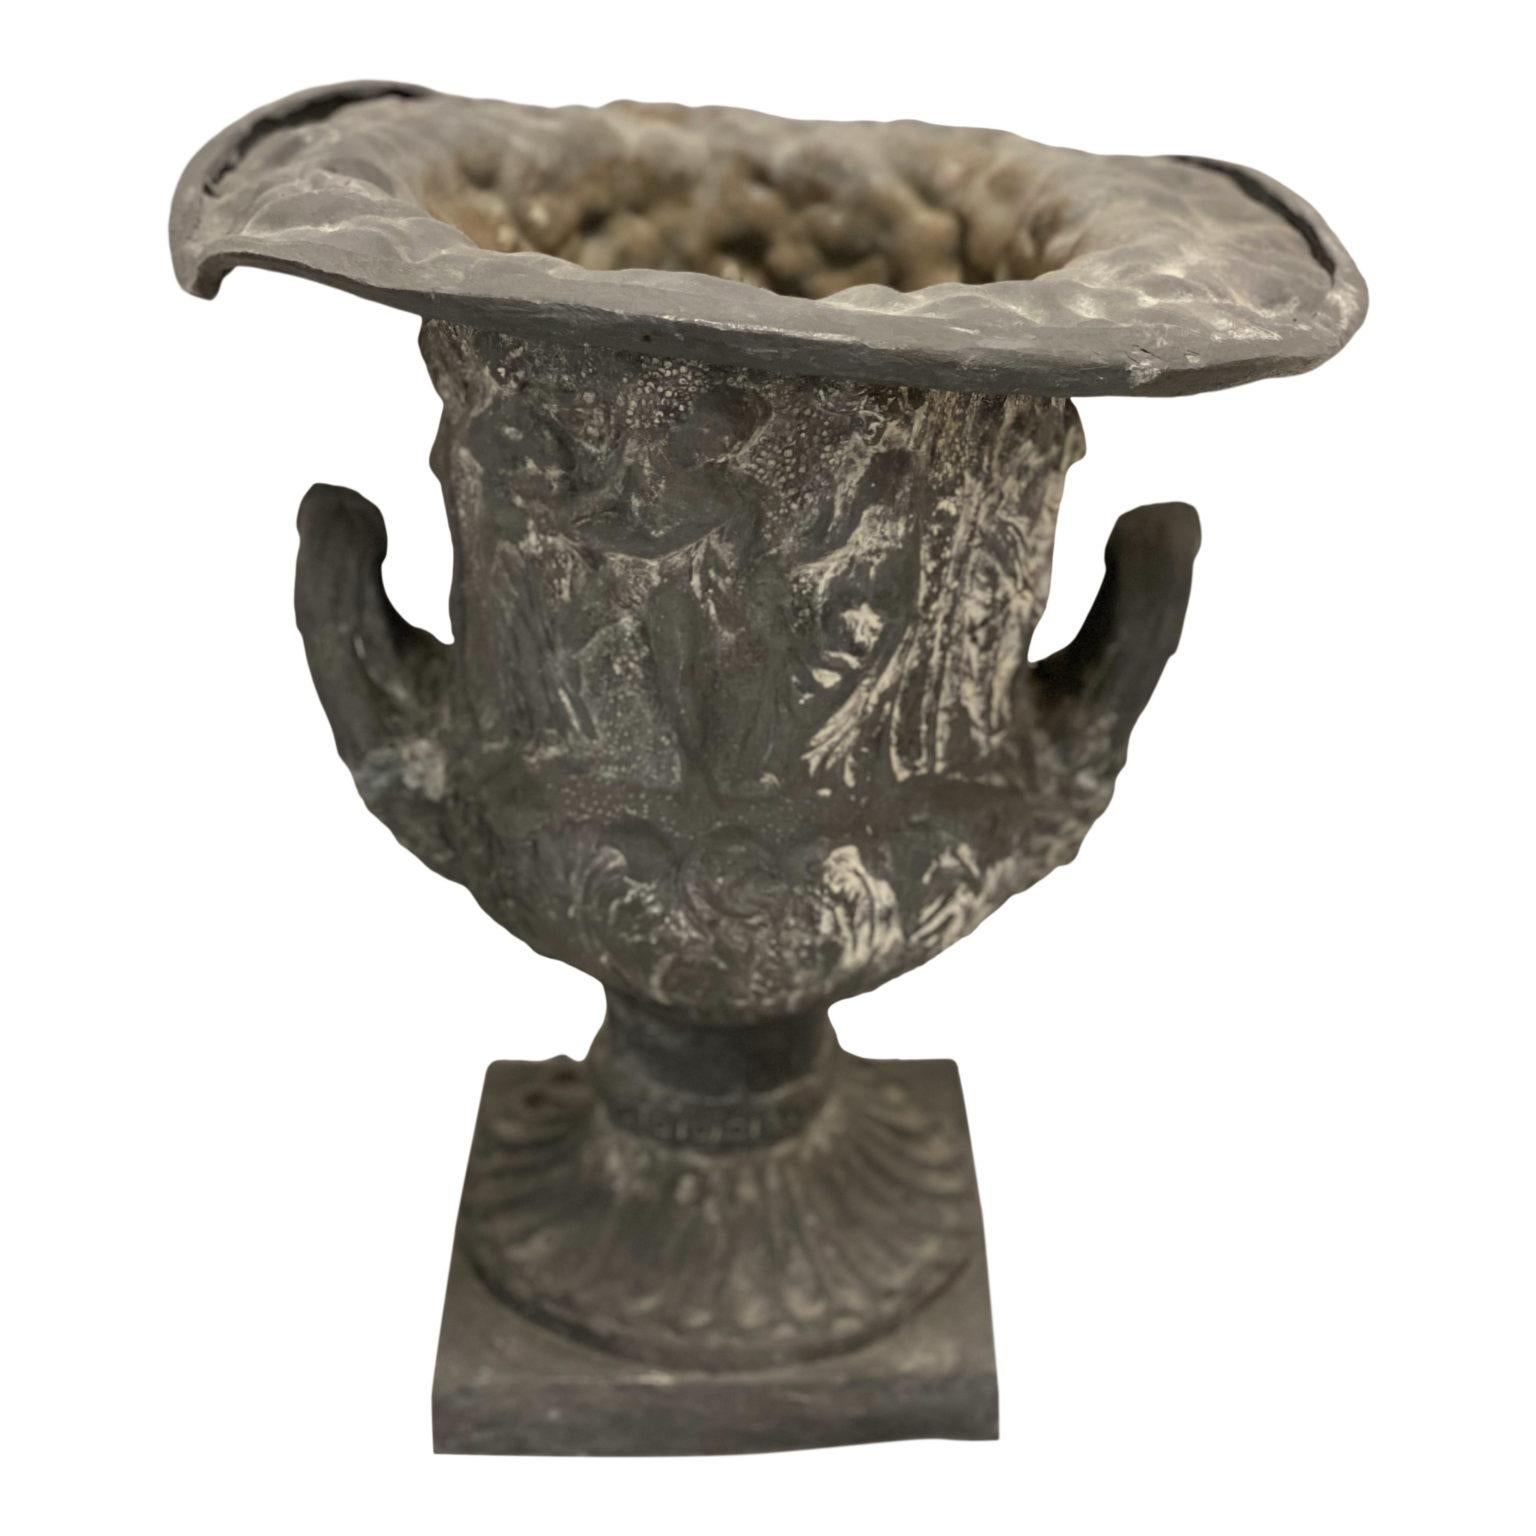 Une ancienne urne du 19ème siècle de forme classique, avec des poignées doubles et des figures encerclant le corps.

Pliée et bosselée

16″H, Base carrée 8″, OAD 15.25″